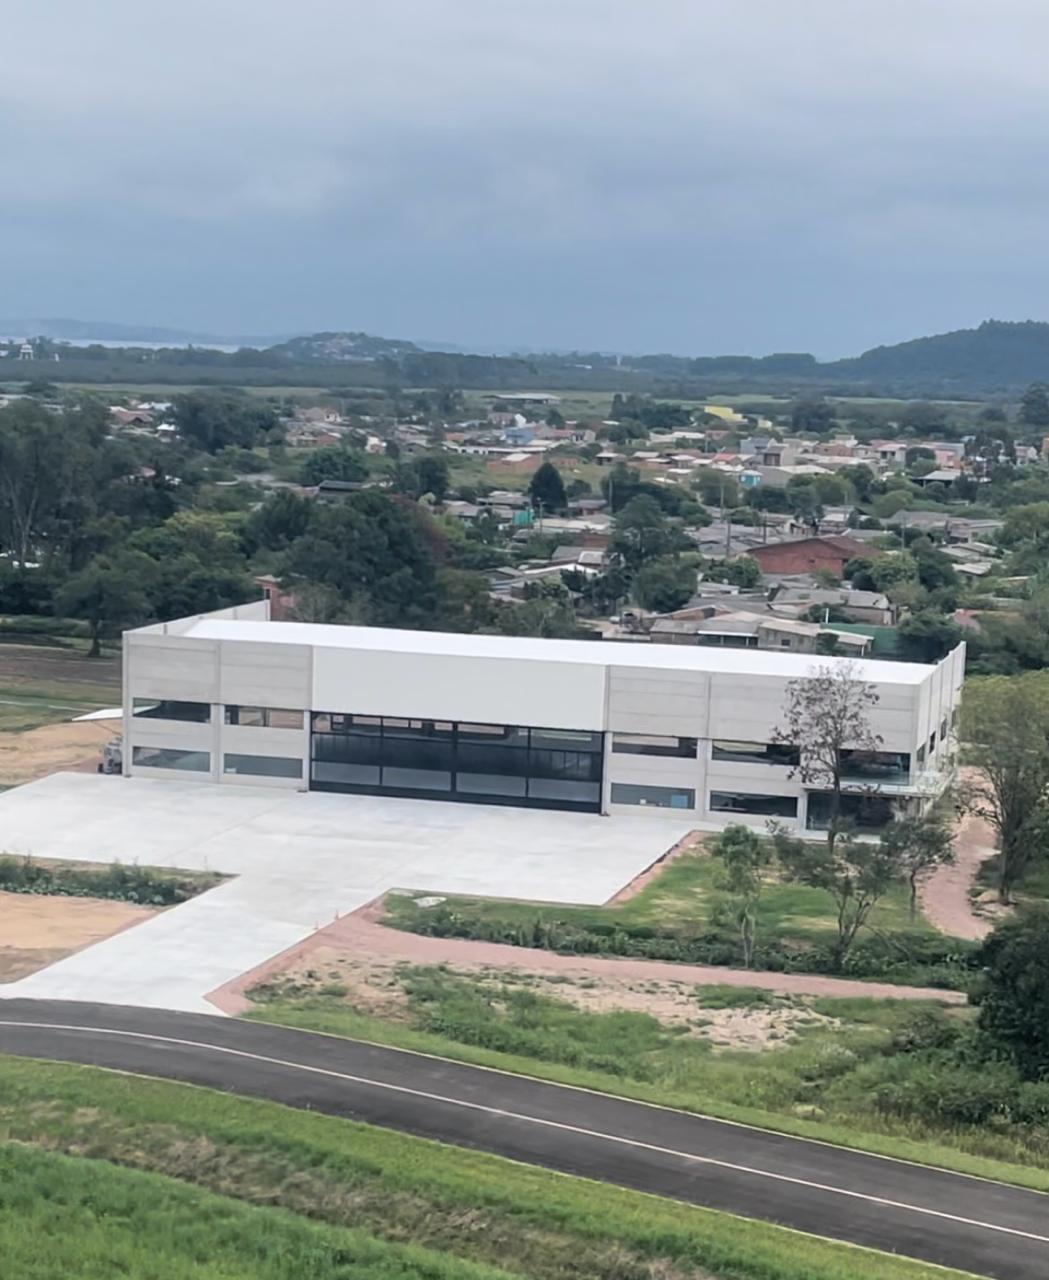 Esta imagem mostra o novo hangar da Fração, com vista da parte externa.